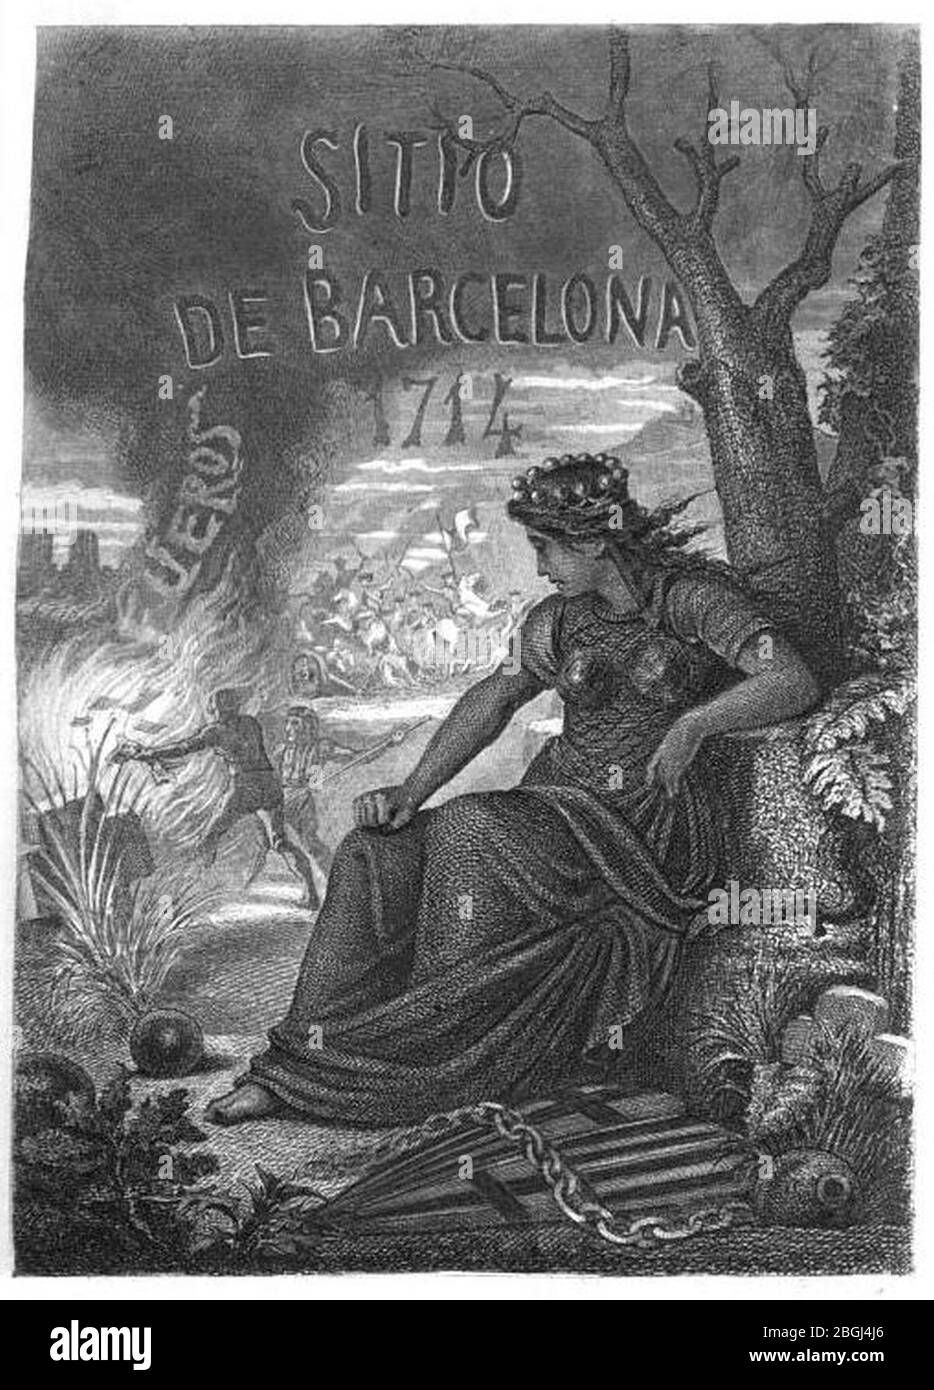 Historia-memorable-sitio-barcelona-1714-mateo-bruguera. Stockfoto